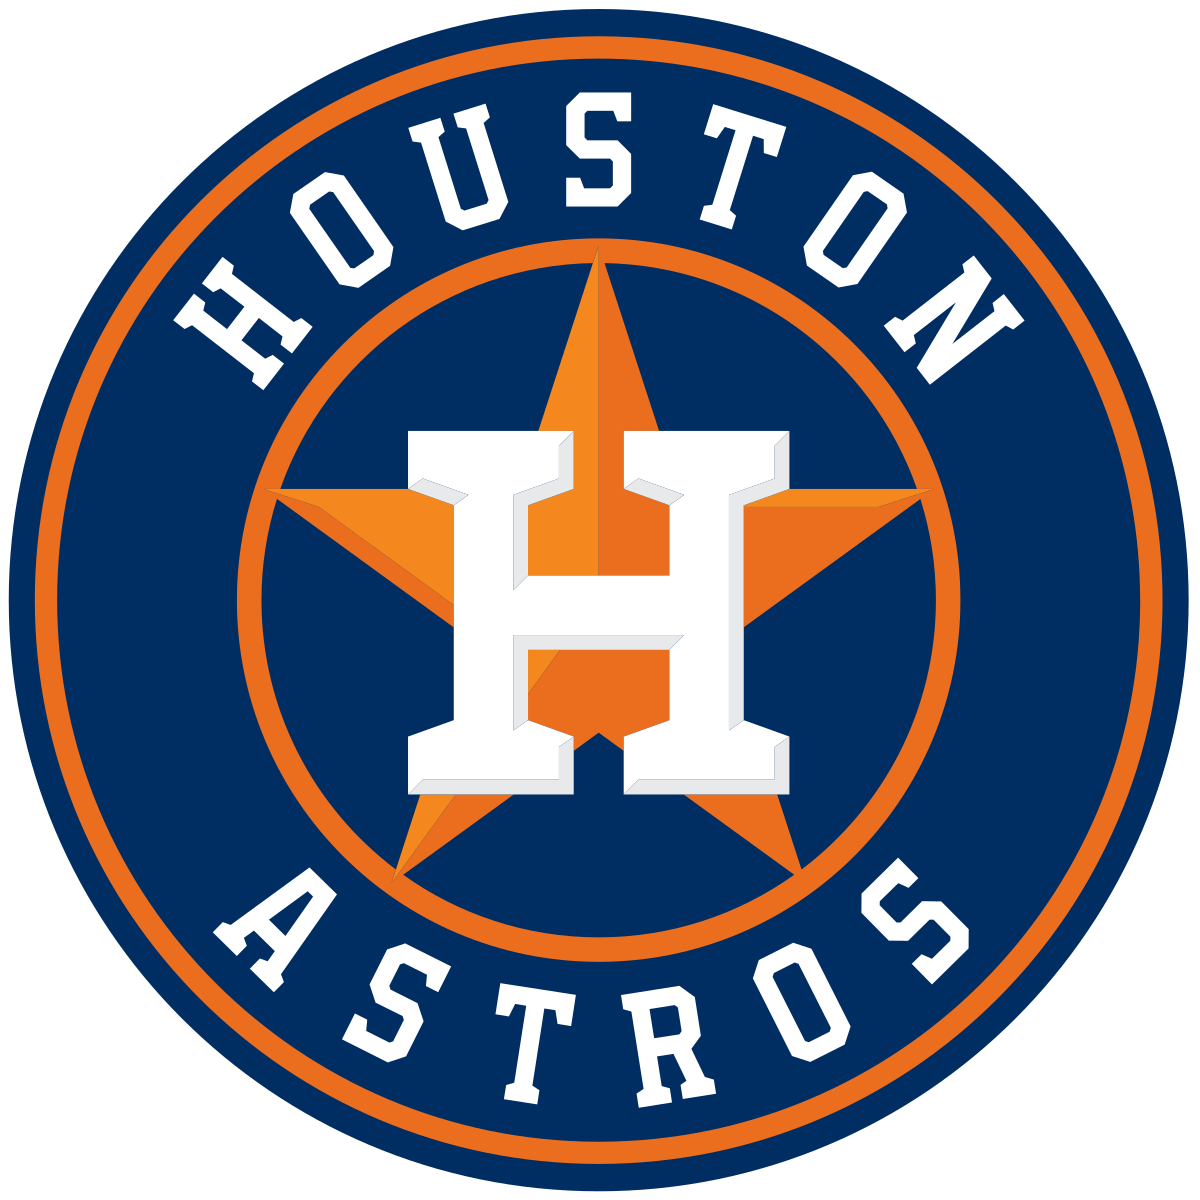 Hou Logo - Houston Astros